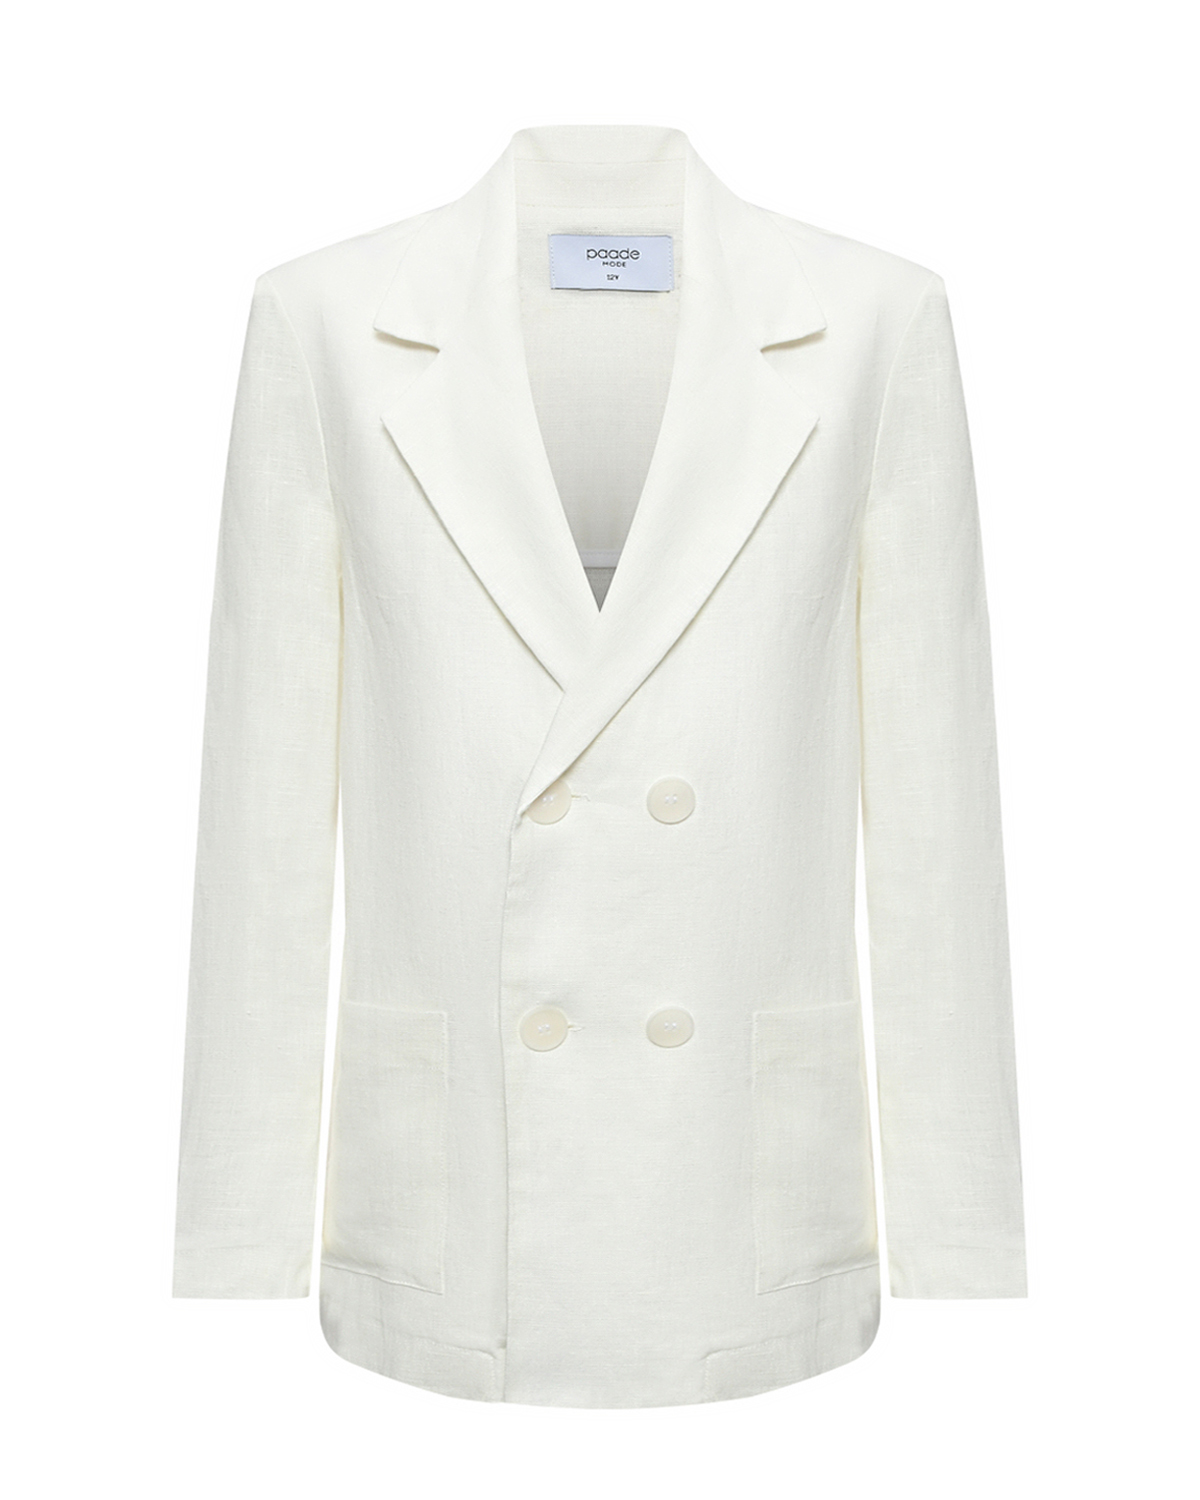 Пиджак с фигурными лацканами, белый Paade Mode пиджак оверсайз белый glvr m